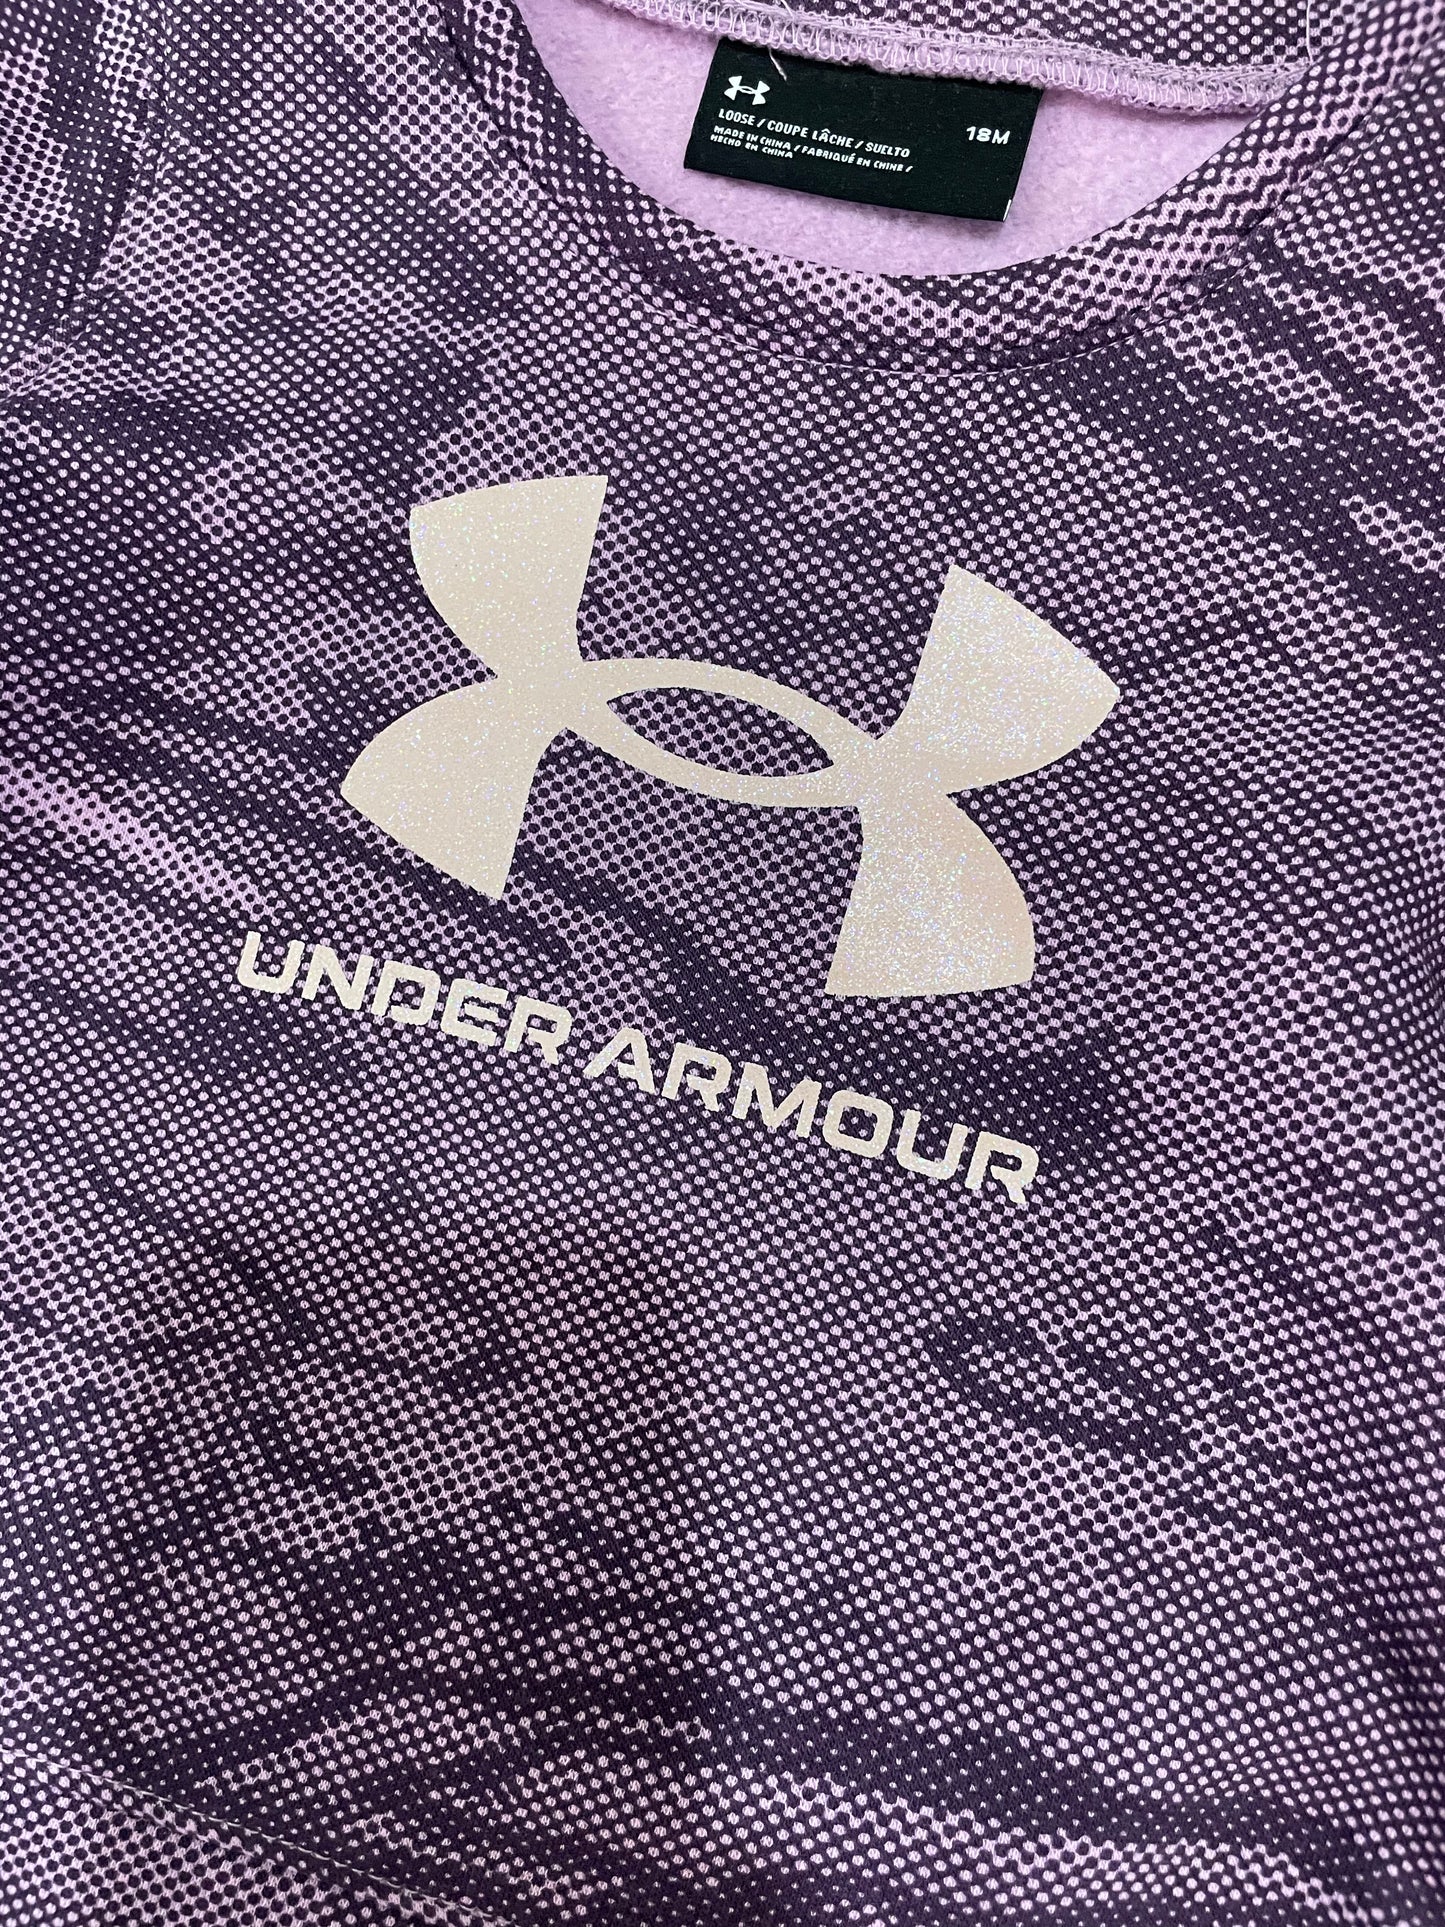 Under Armour Pacific Purple Set